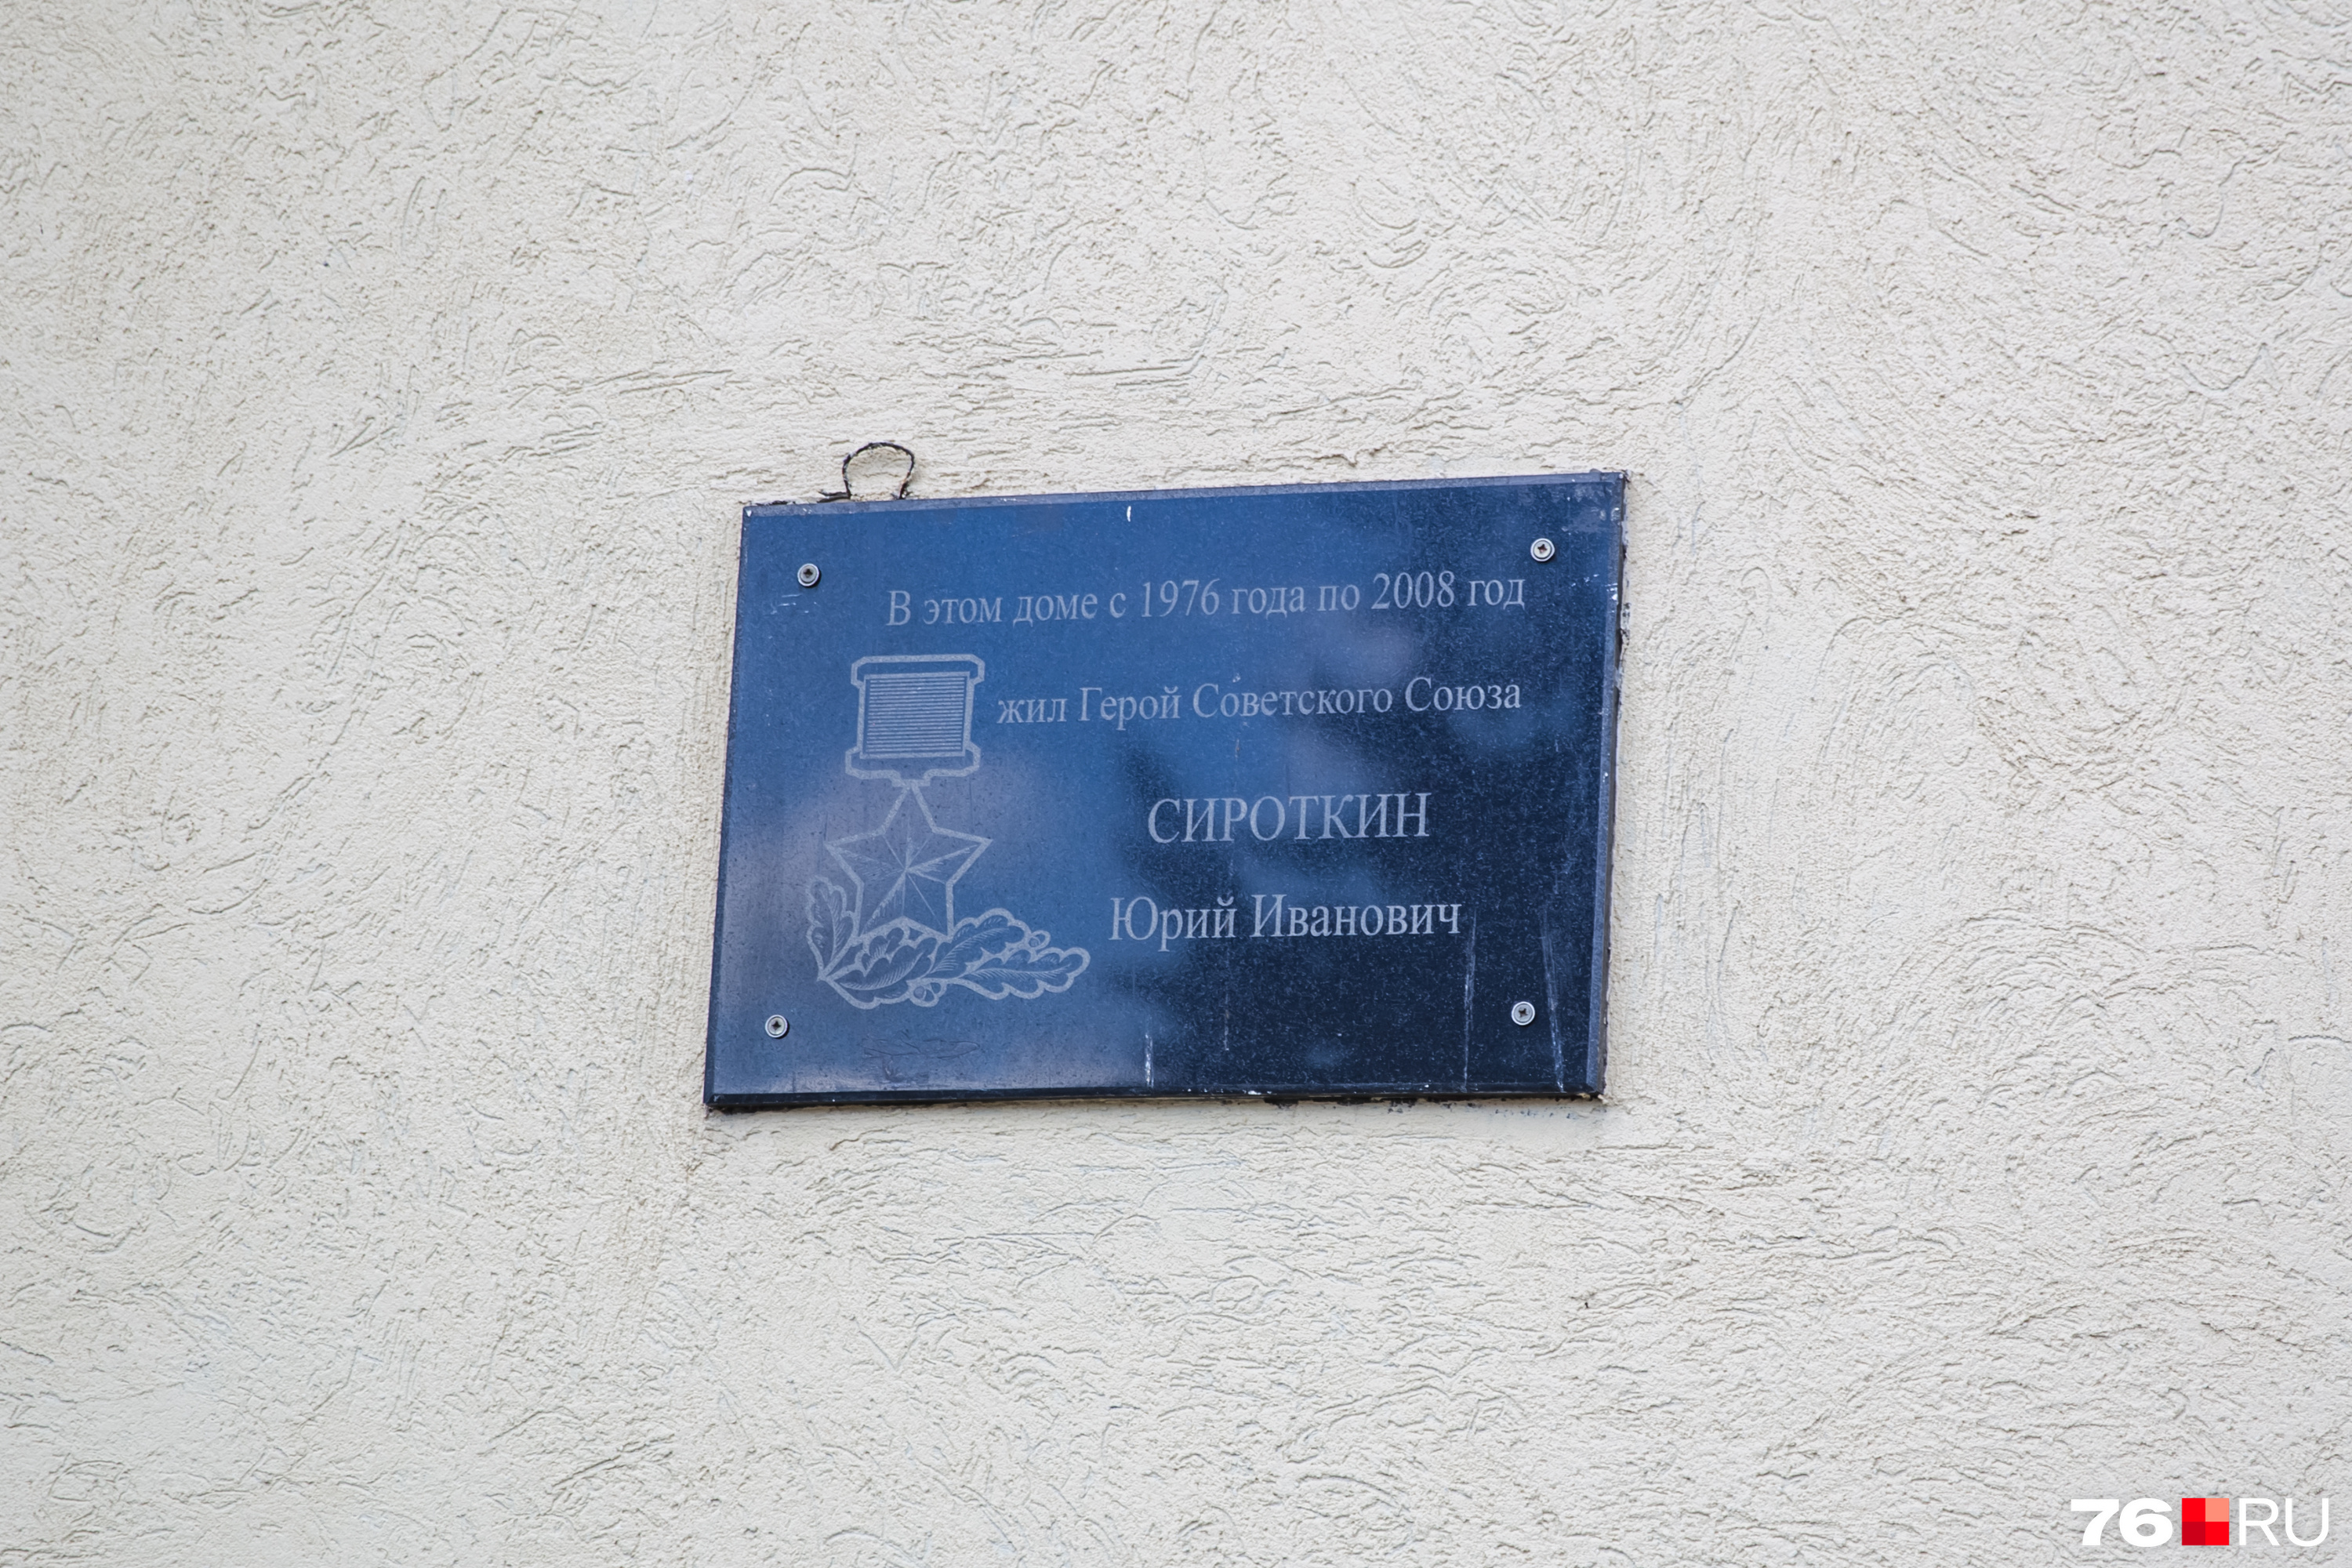 Сейчас на доме висит памятная табличка о герое СССР Юрии Сироткине